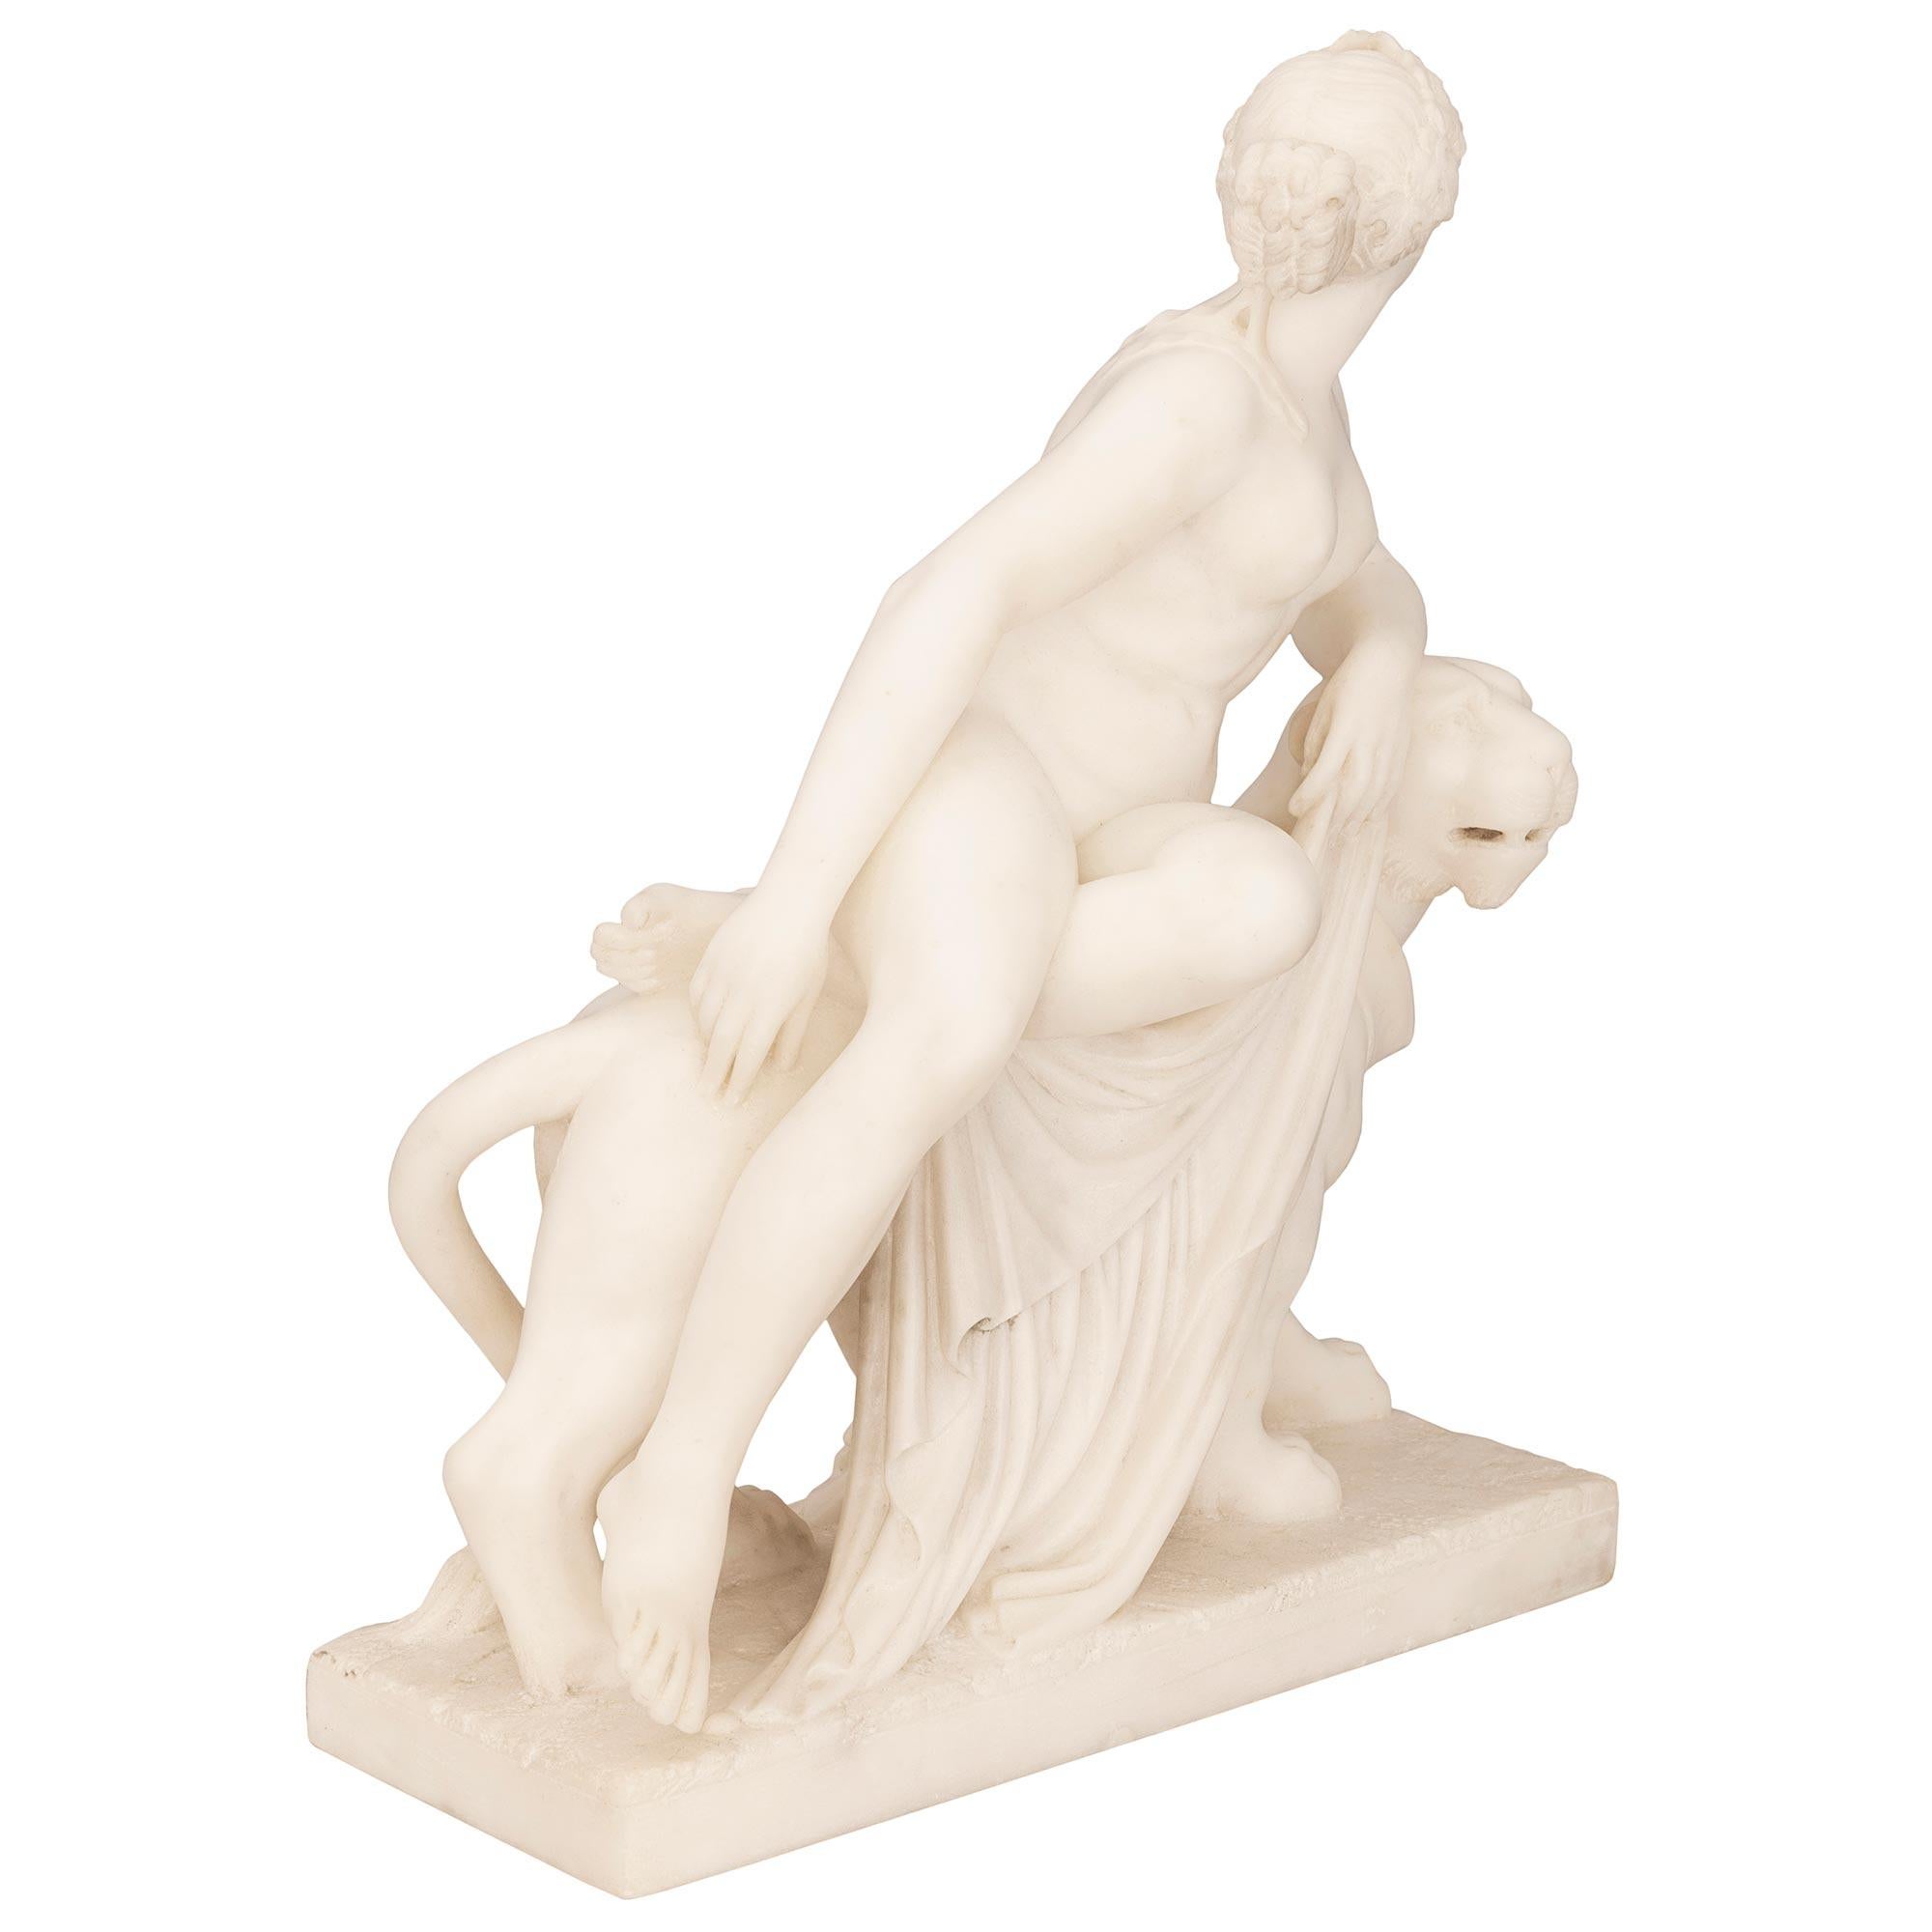 Statue en albâtre du 19e siècle de très haute qualité représentant la déesse grecque Ariane assise sur sa panthère, signée P. Bazzanti Florence. La statue est surélevée par une base rectangulaire dotée d'une fine bordure mouchetée et d'un dessin au